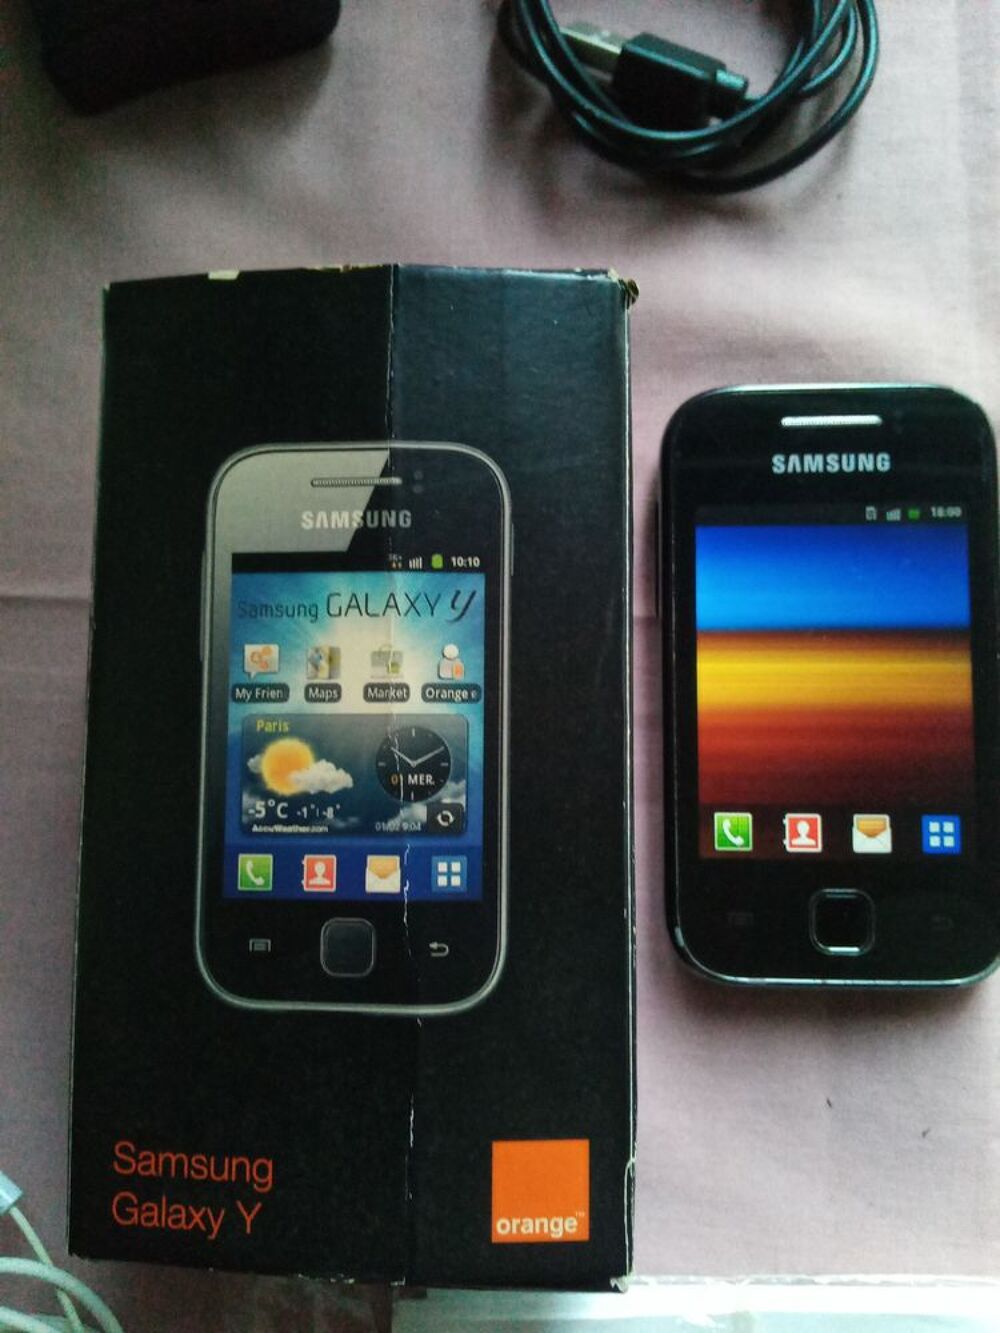 T&eacute;l&eacute;phone mobile Samsung.
Tlphones et tablettes